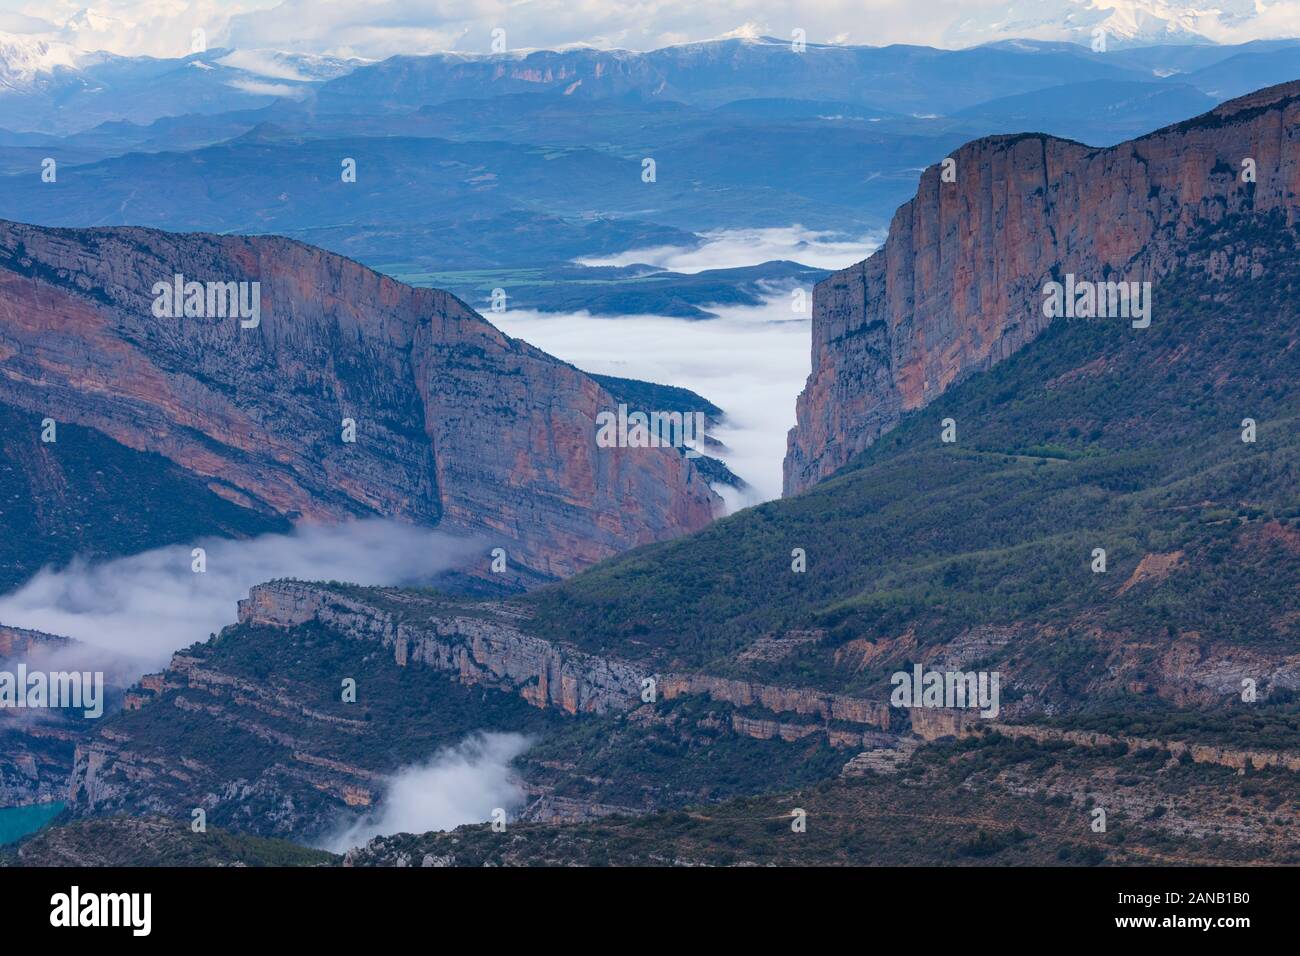 Canelles reservoir, Montrebei gorge, Congost de Mont-rebei, Montsec Range, The Pre-Pyrenees, Lleida, Catalonia, Spain, Europe Stock Photo